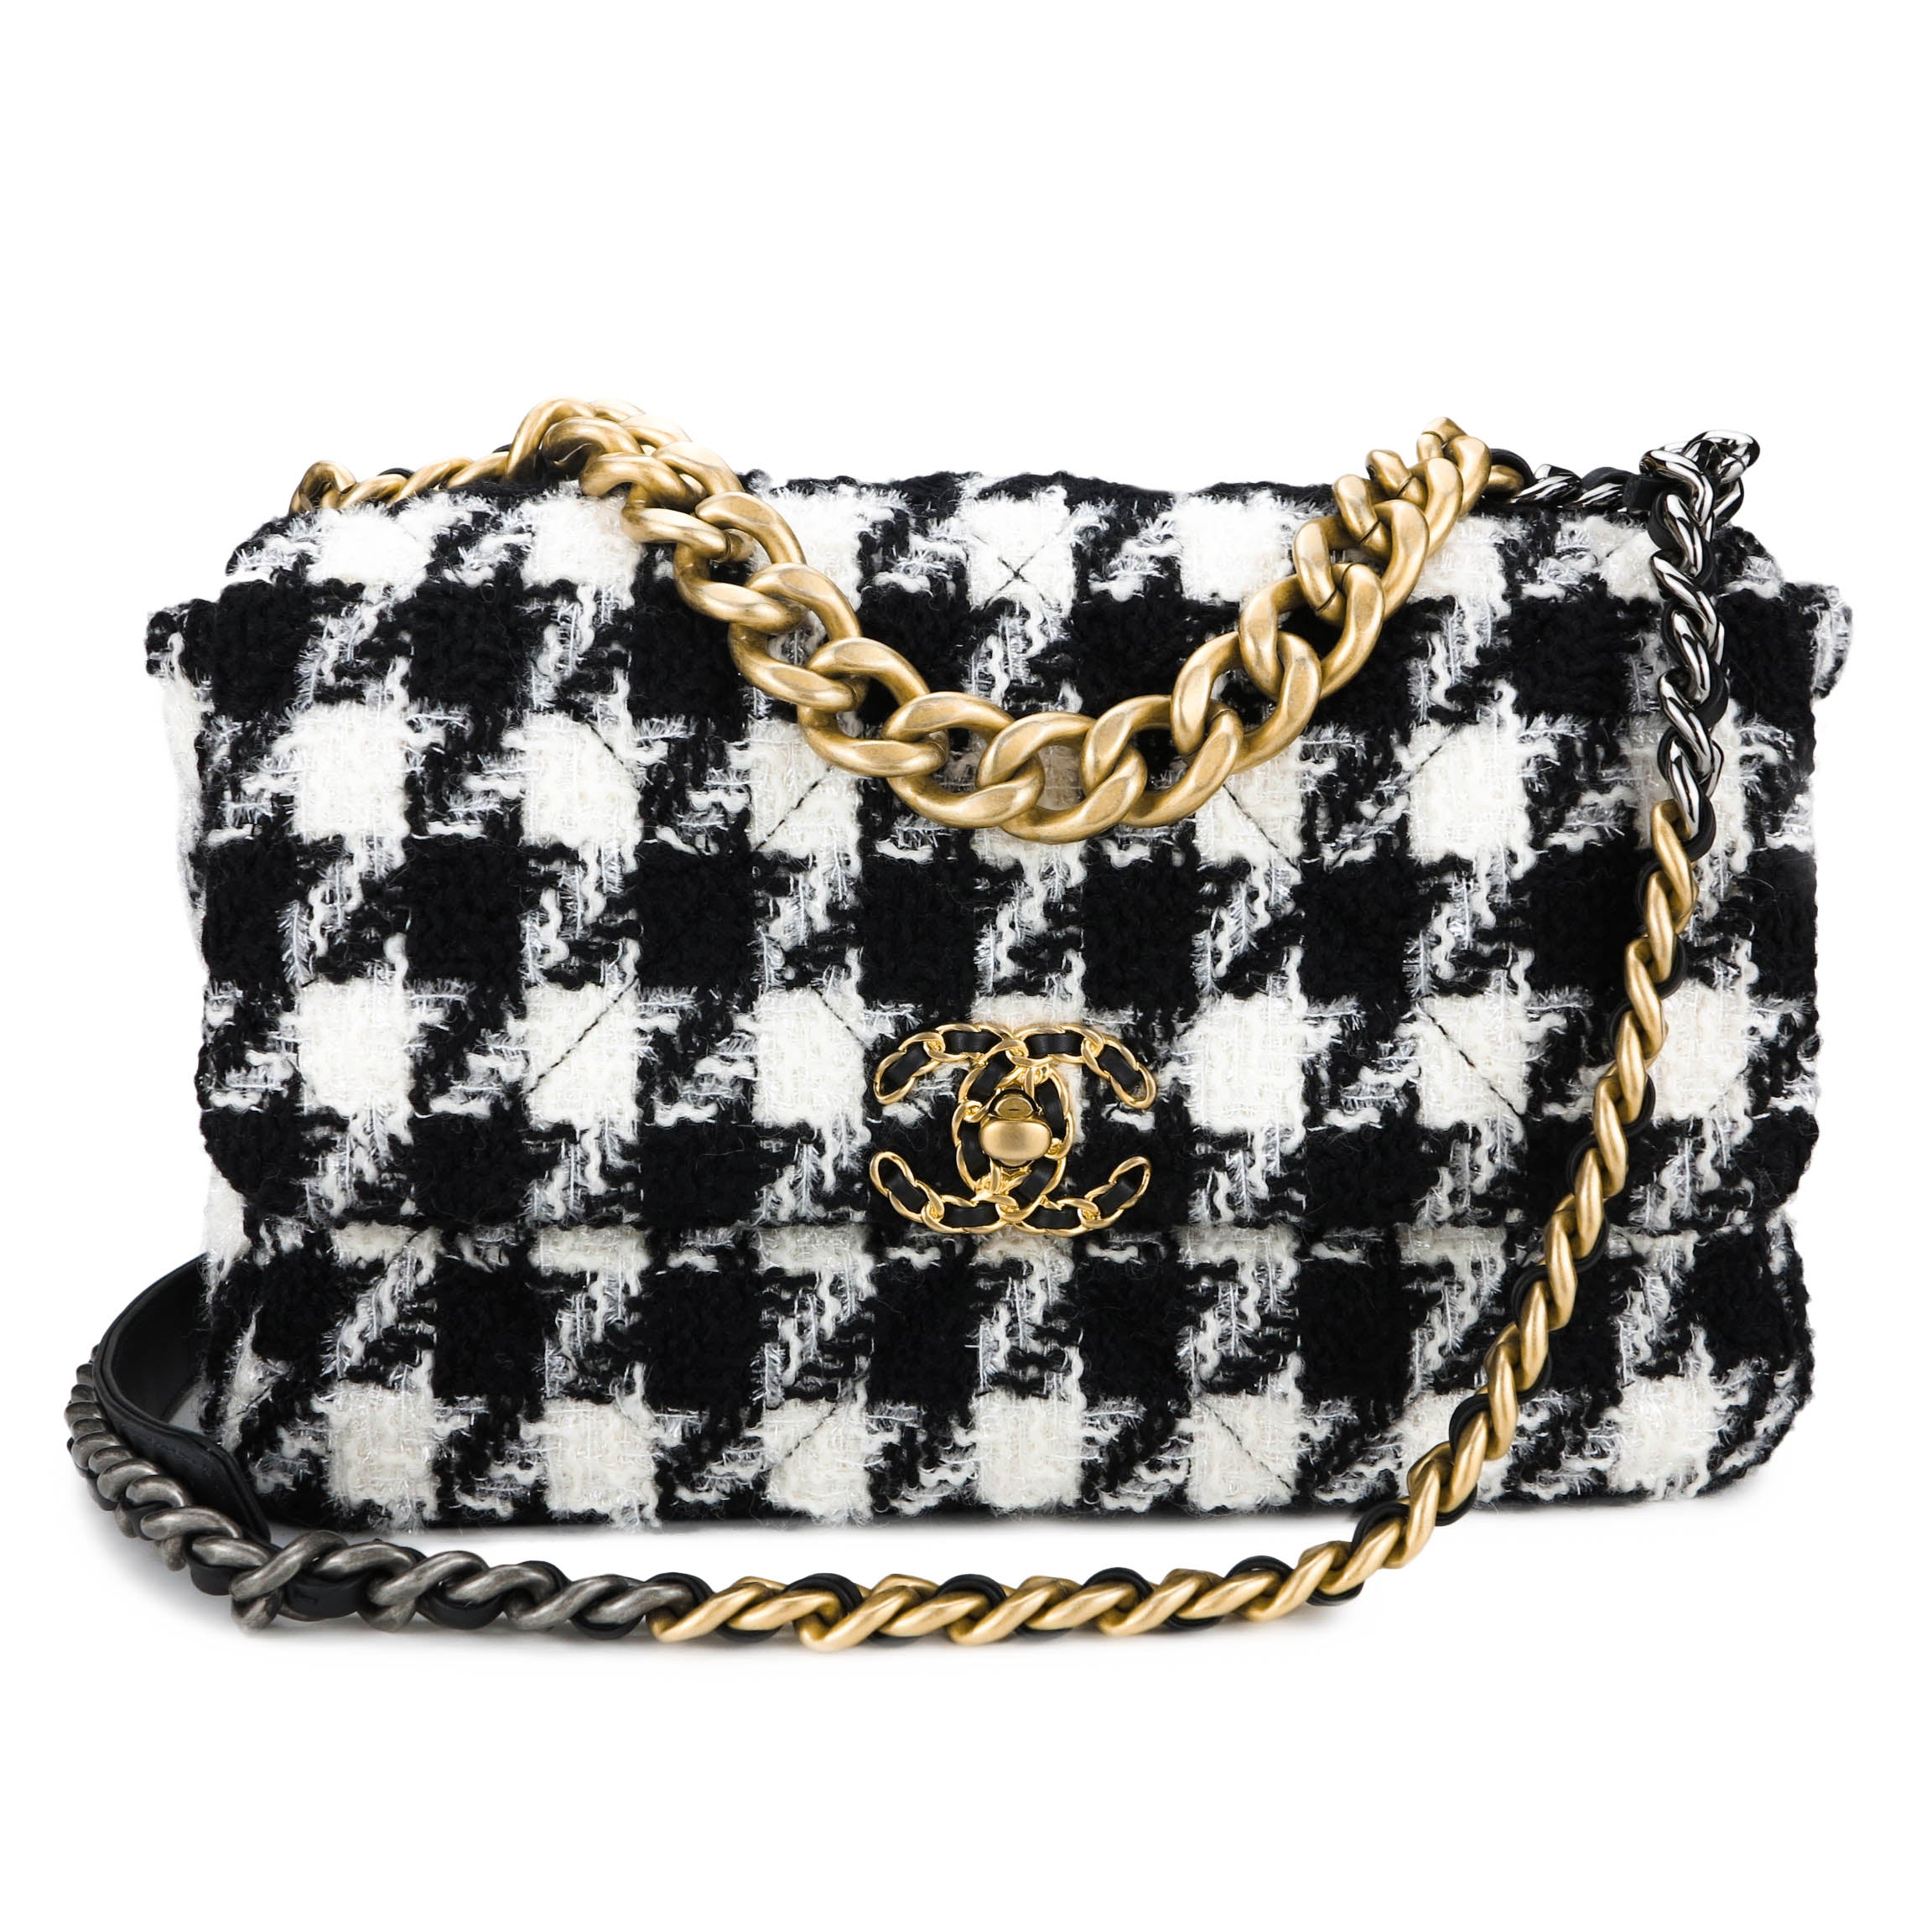 Chanel Chanel 19 Tweed Handbag